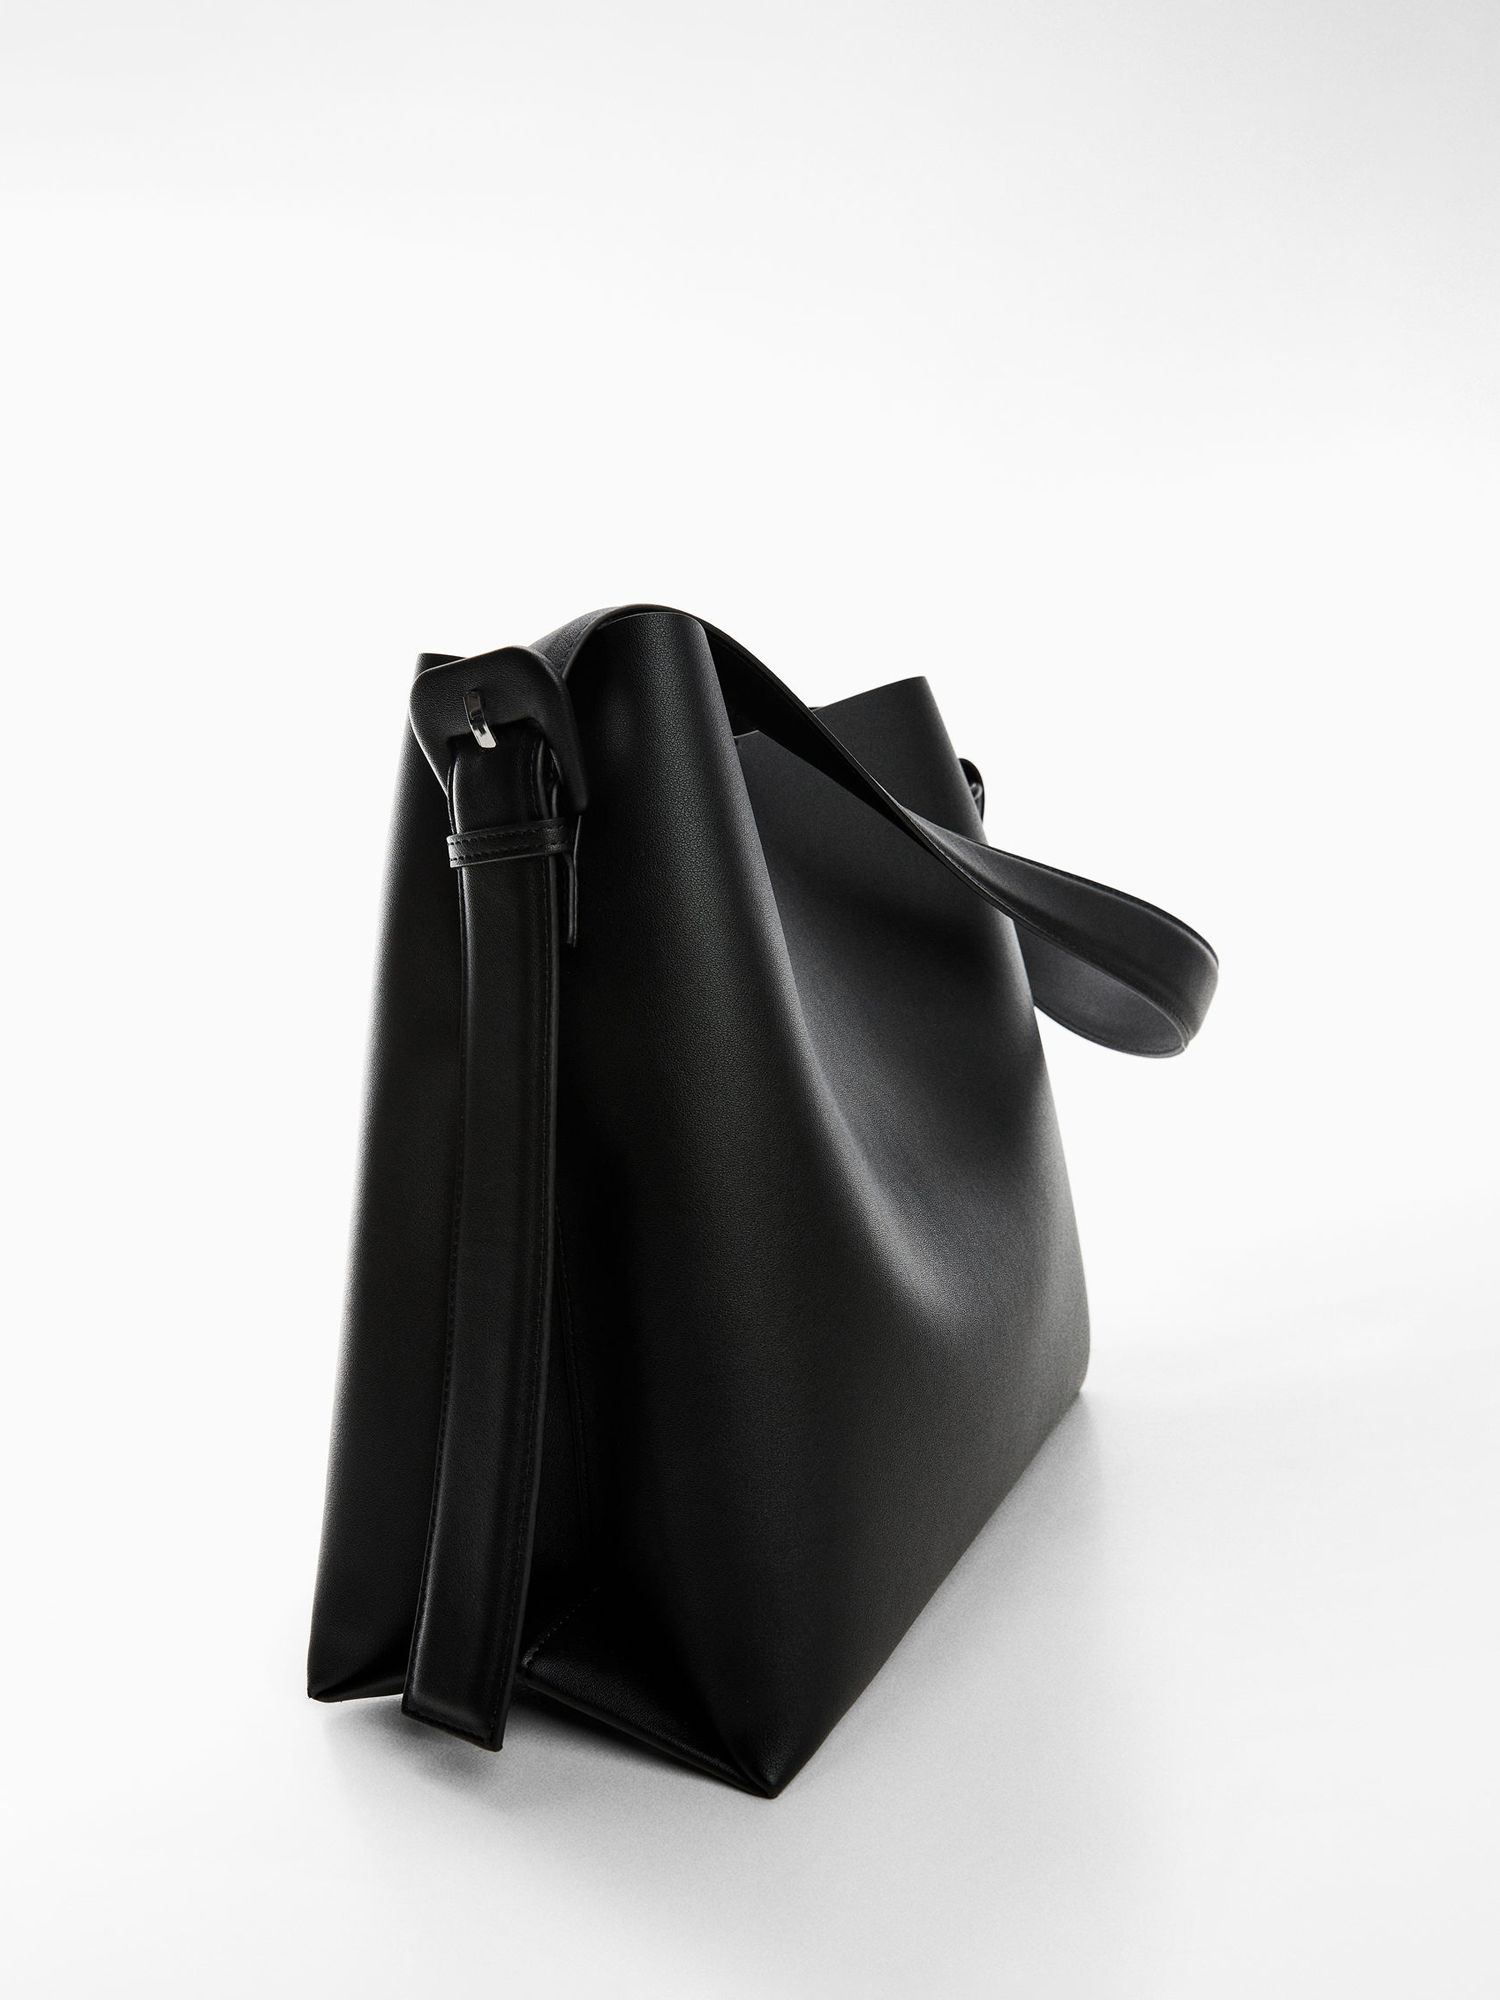 Mango Lucia Shoulder Bag, Black at John Lewis & Partners